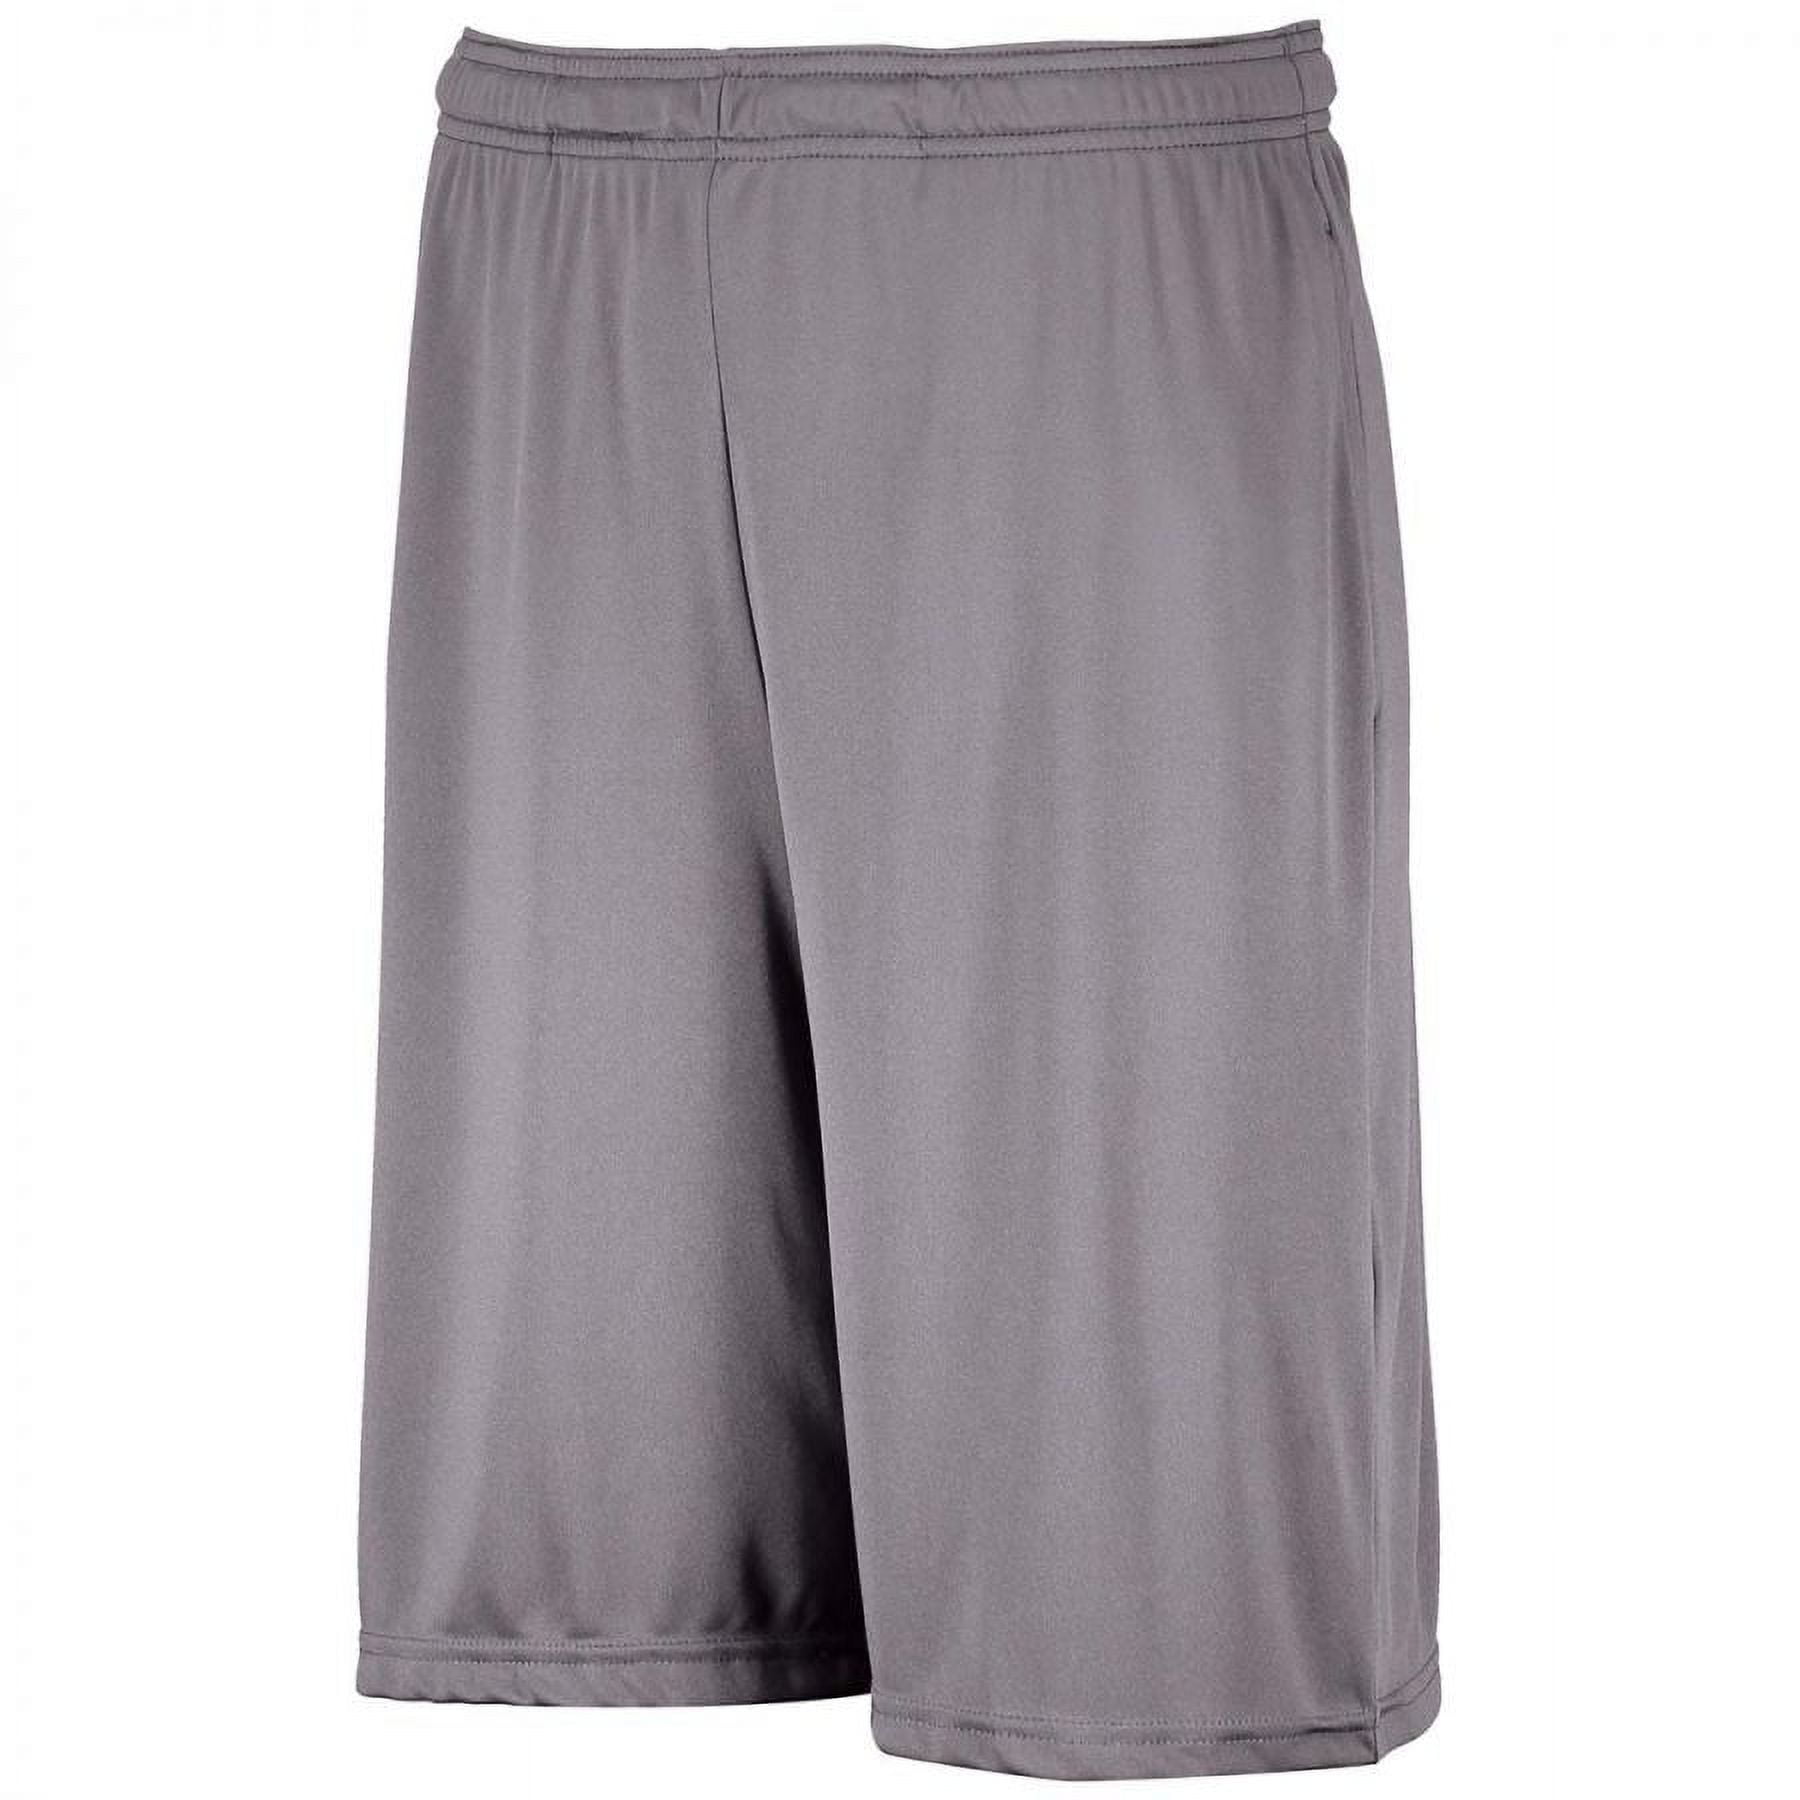 46 Basketball shorts design ideas  basketball shorts, shorts, mens outfits